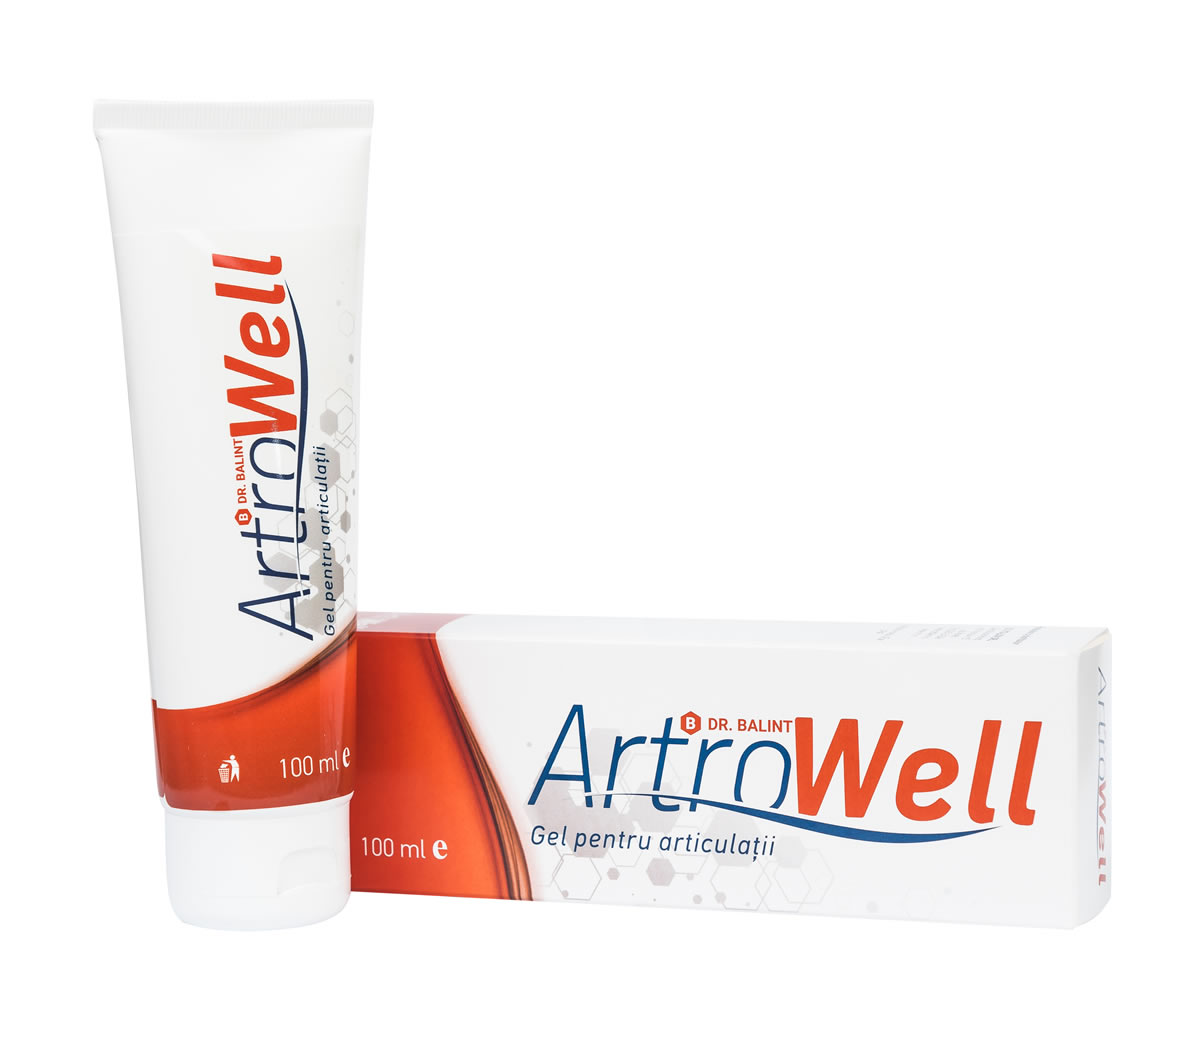 ArtroWell gel pentru articulatii, 100 ml, Priotech